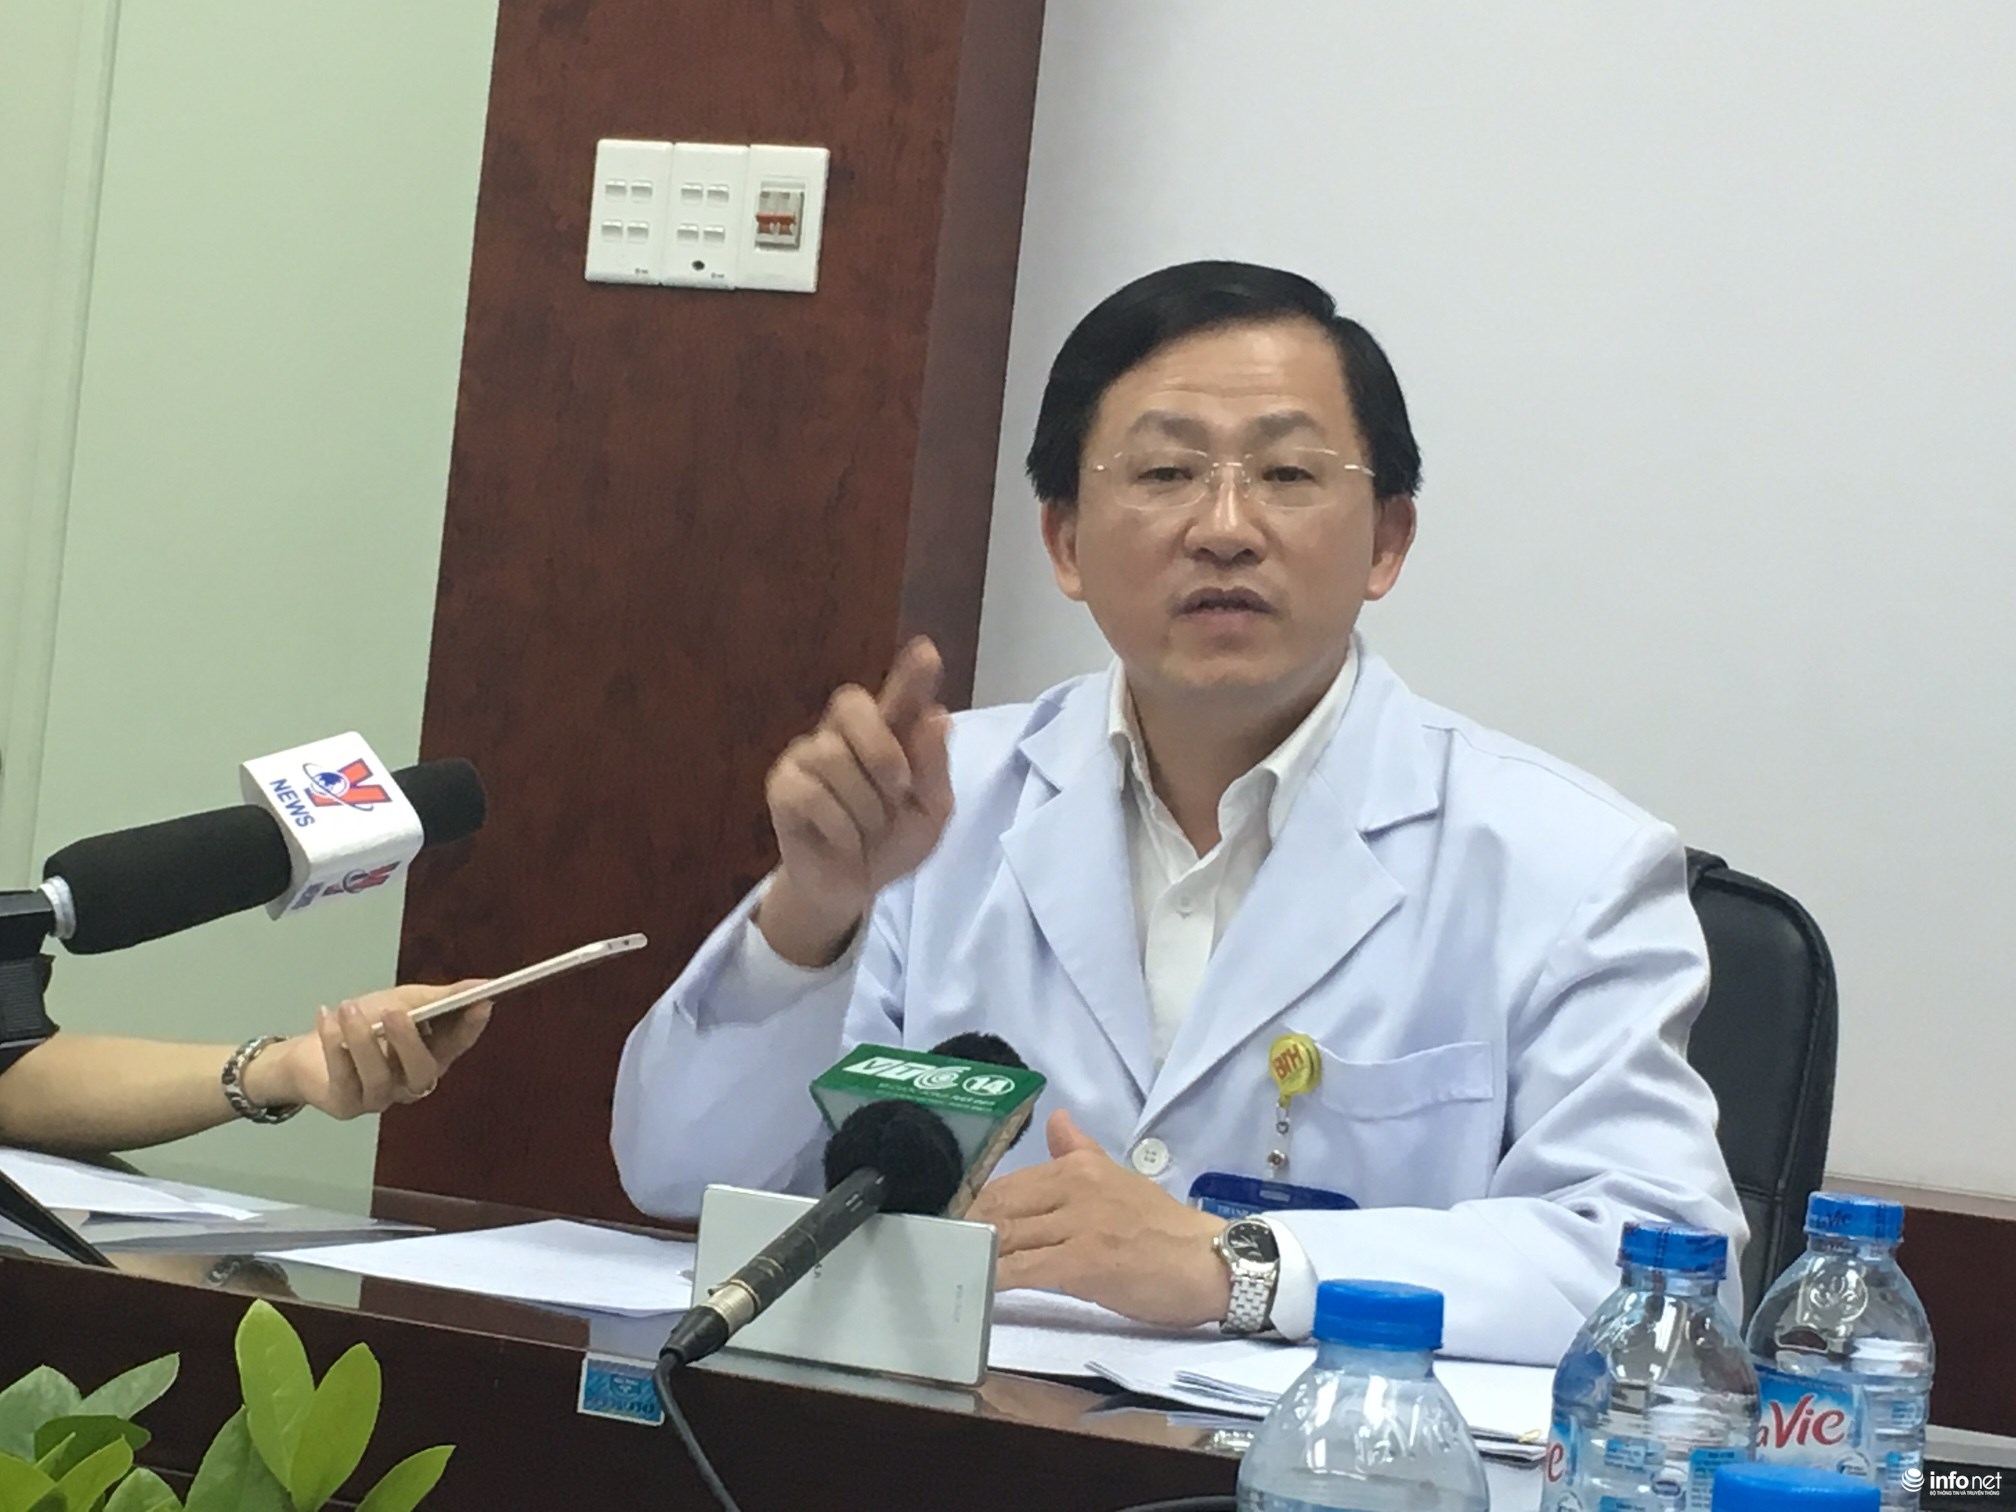  Giám đốc Truyền máu - Huyết học TP. Hồ Chí Minh nói về vụ gần 20.000 viên thuốc trị ung thư bị tiêu hủy. Ảnh: Infonet